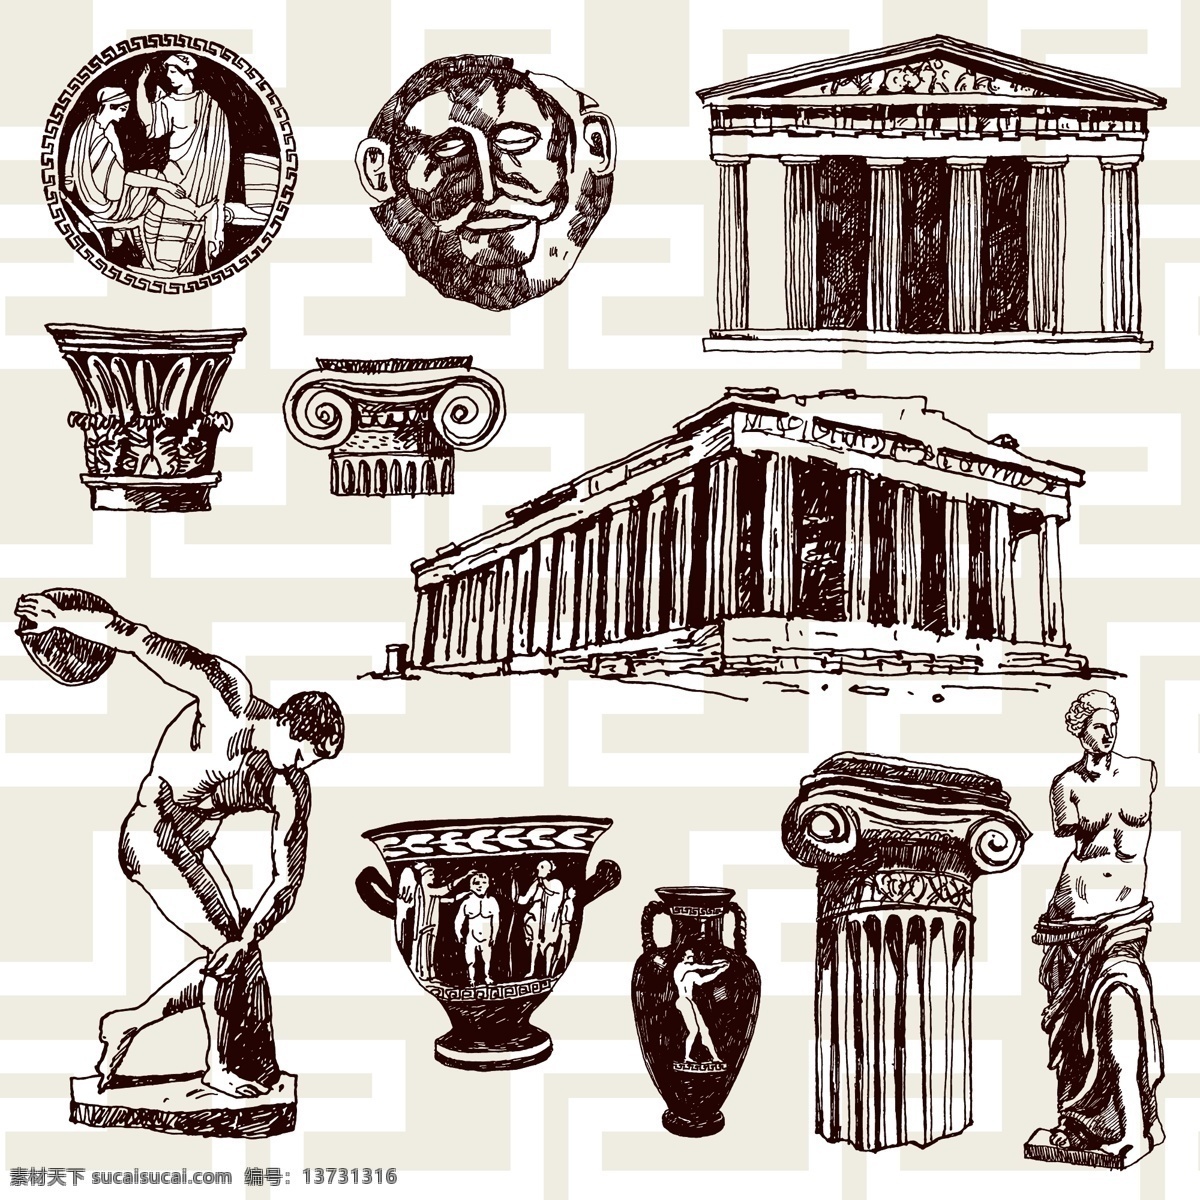 复古 建筑 希腊 元素 矢量 矢量素材 设计素材 背景素材 手绘